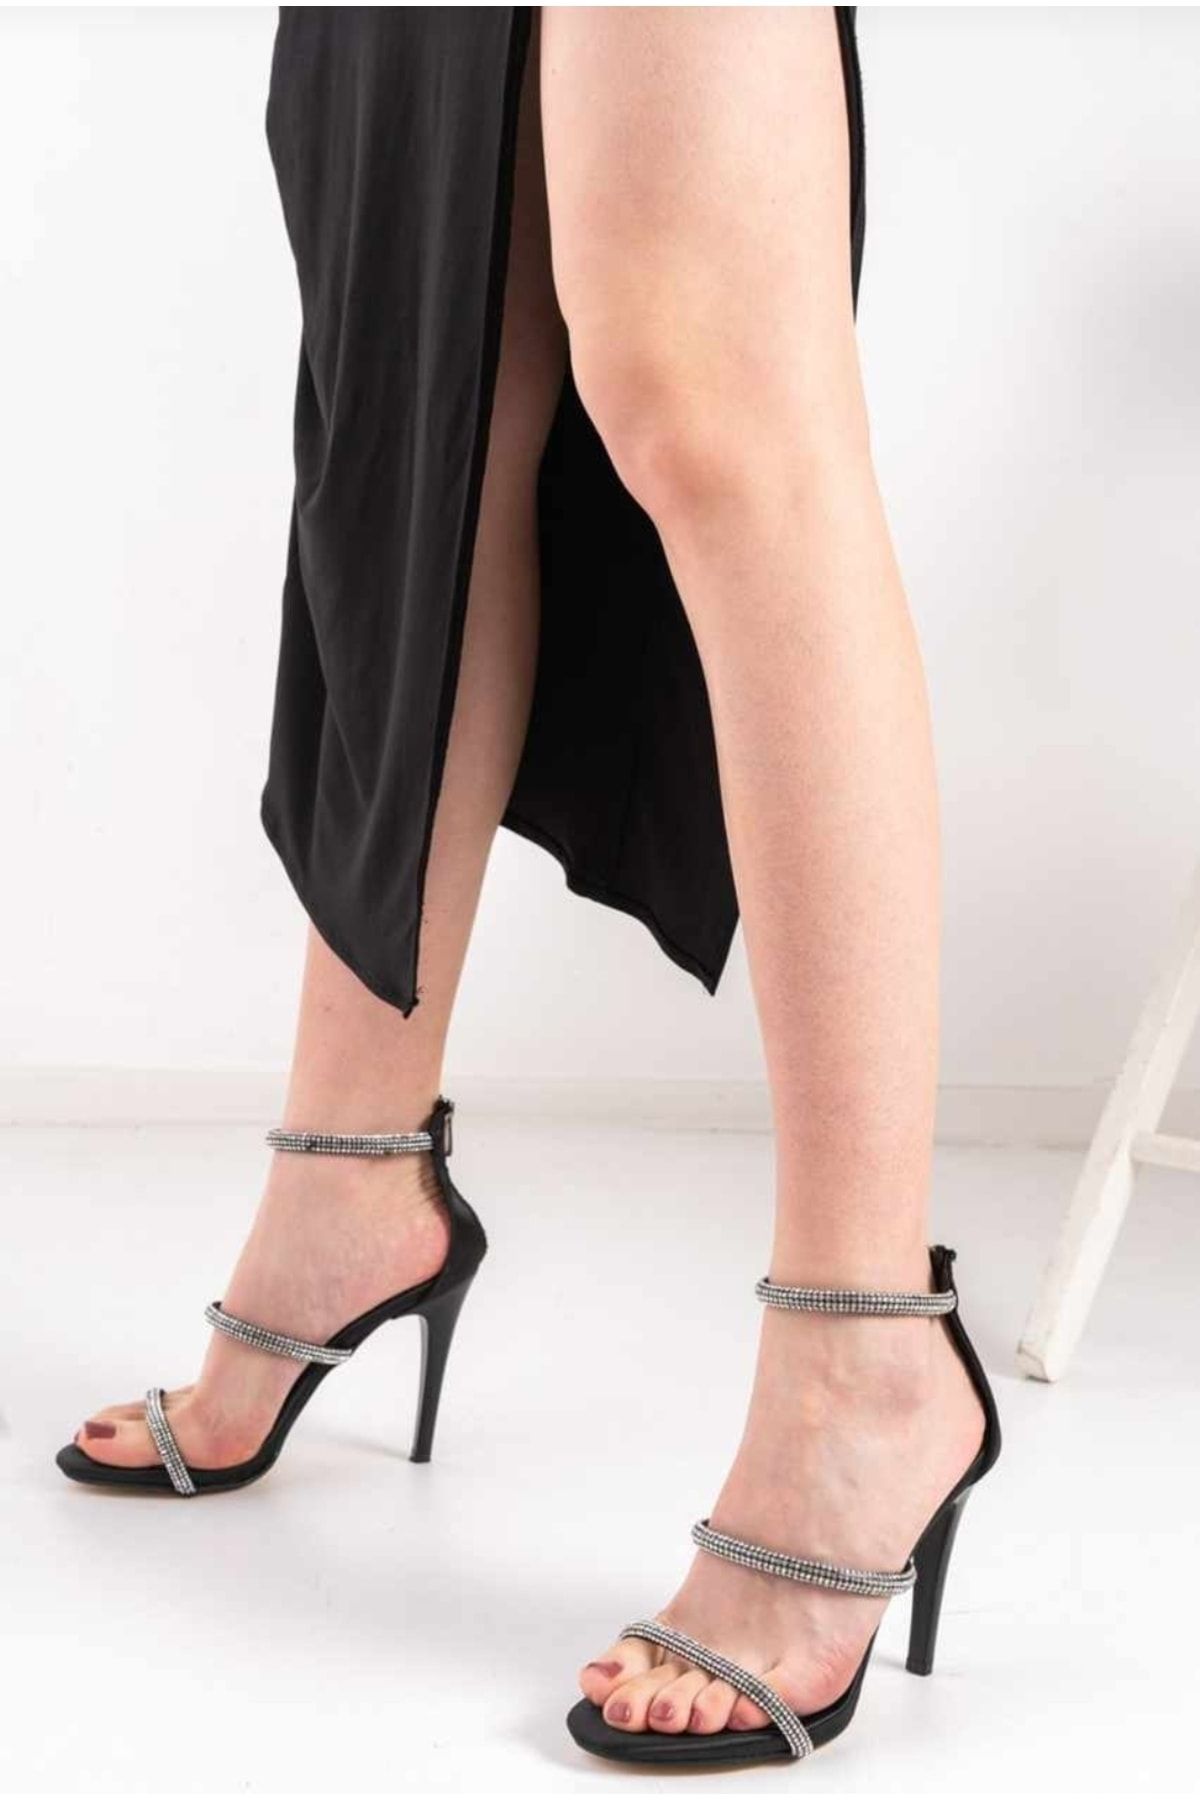 Afilli Kadın Siyah Taşlı İnce Yüksek Topuklu İnce Tek Bantlı Açık Bağcıklı Abiye Sandalet Ayakkabı